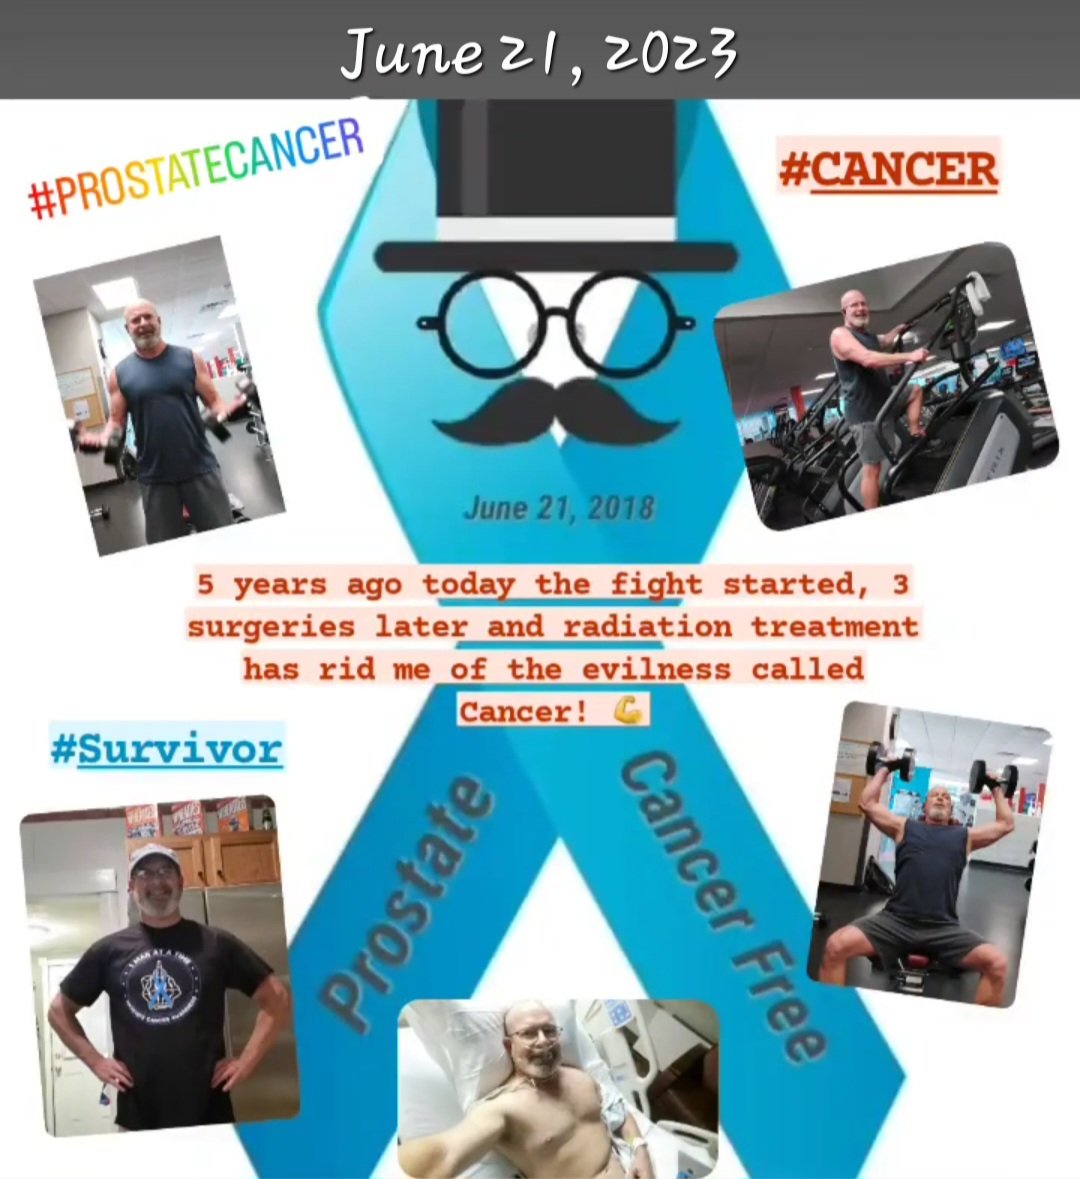 @PCFnews @ZEROCancer my 5 year anniversary #prostatecancer #Cancer #CancerSurvivor